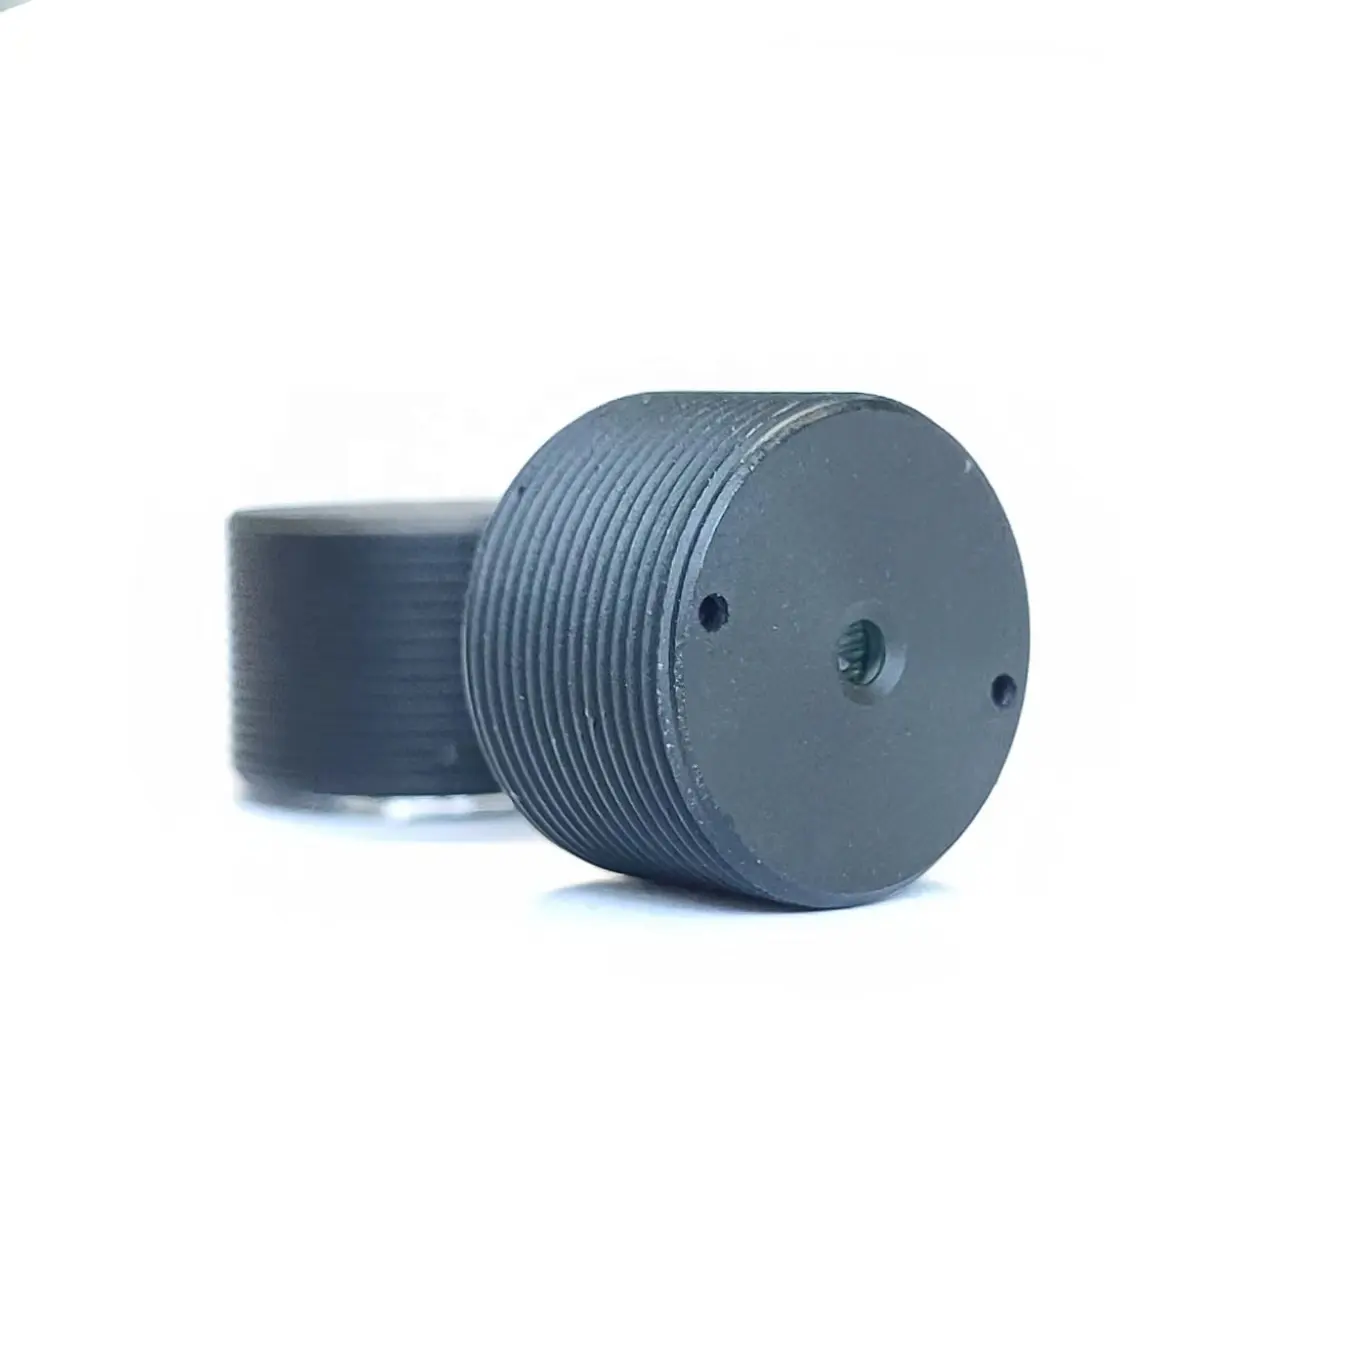 Pinhole Lens F3.0mm Focal Length 4.6mm 3MP 1/2.7 "Sensor TTL10.86mmM12 Button Type Hidden Camera Accessories